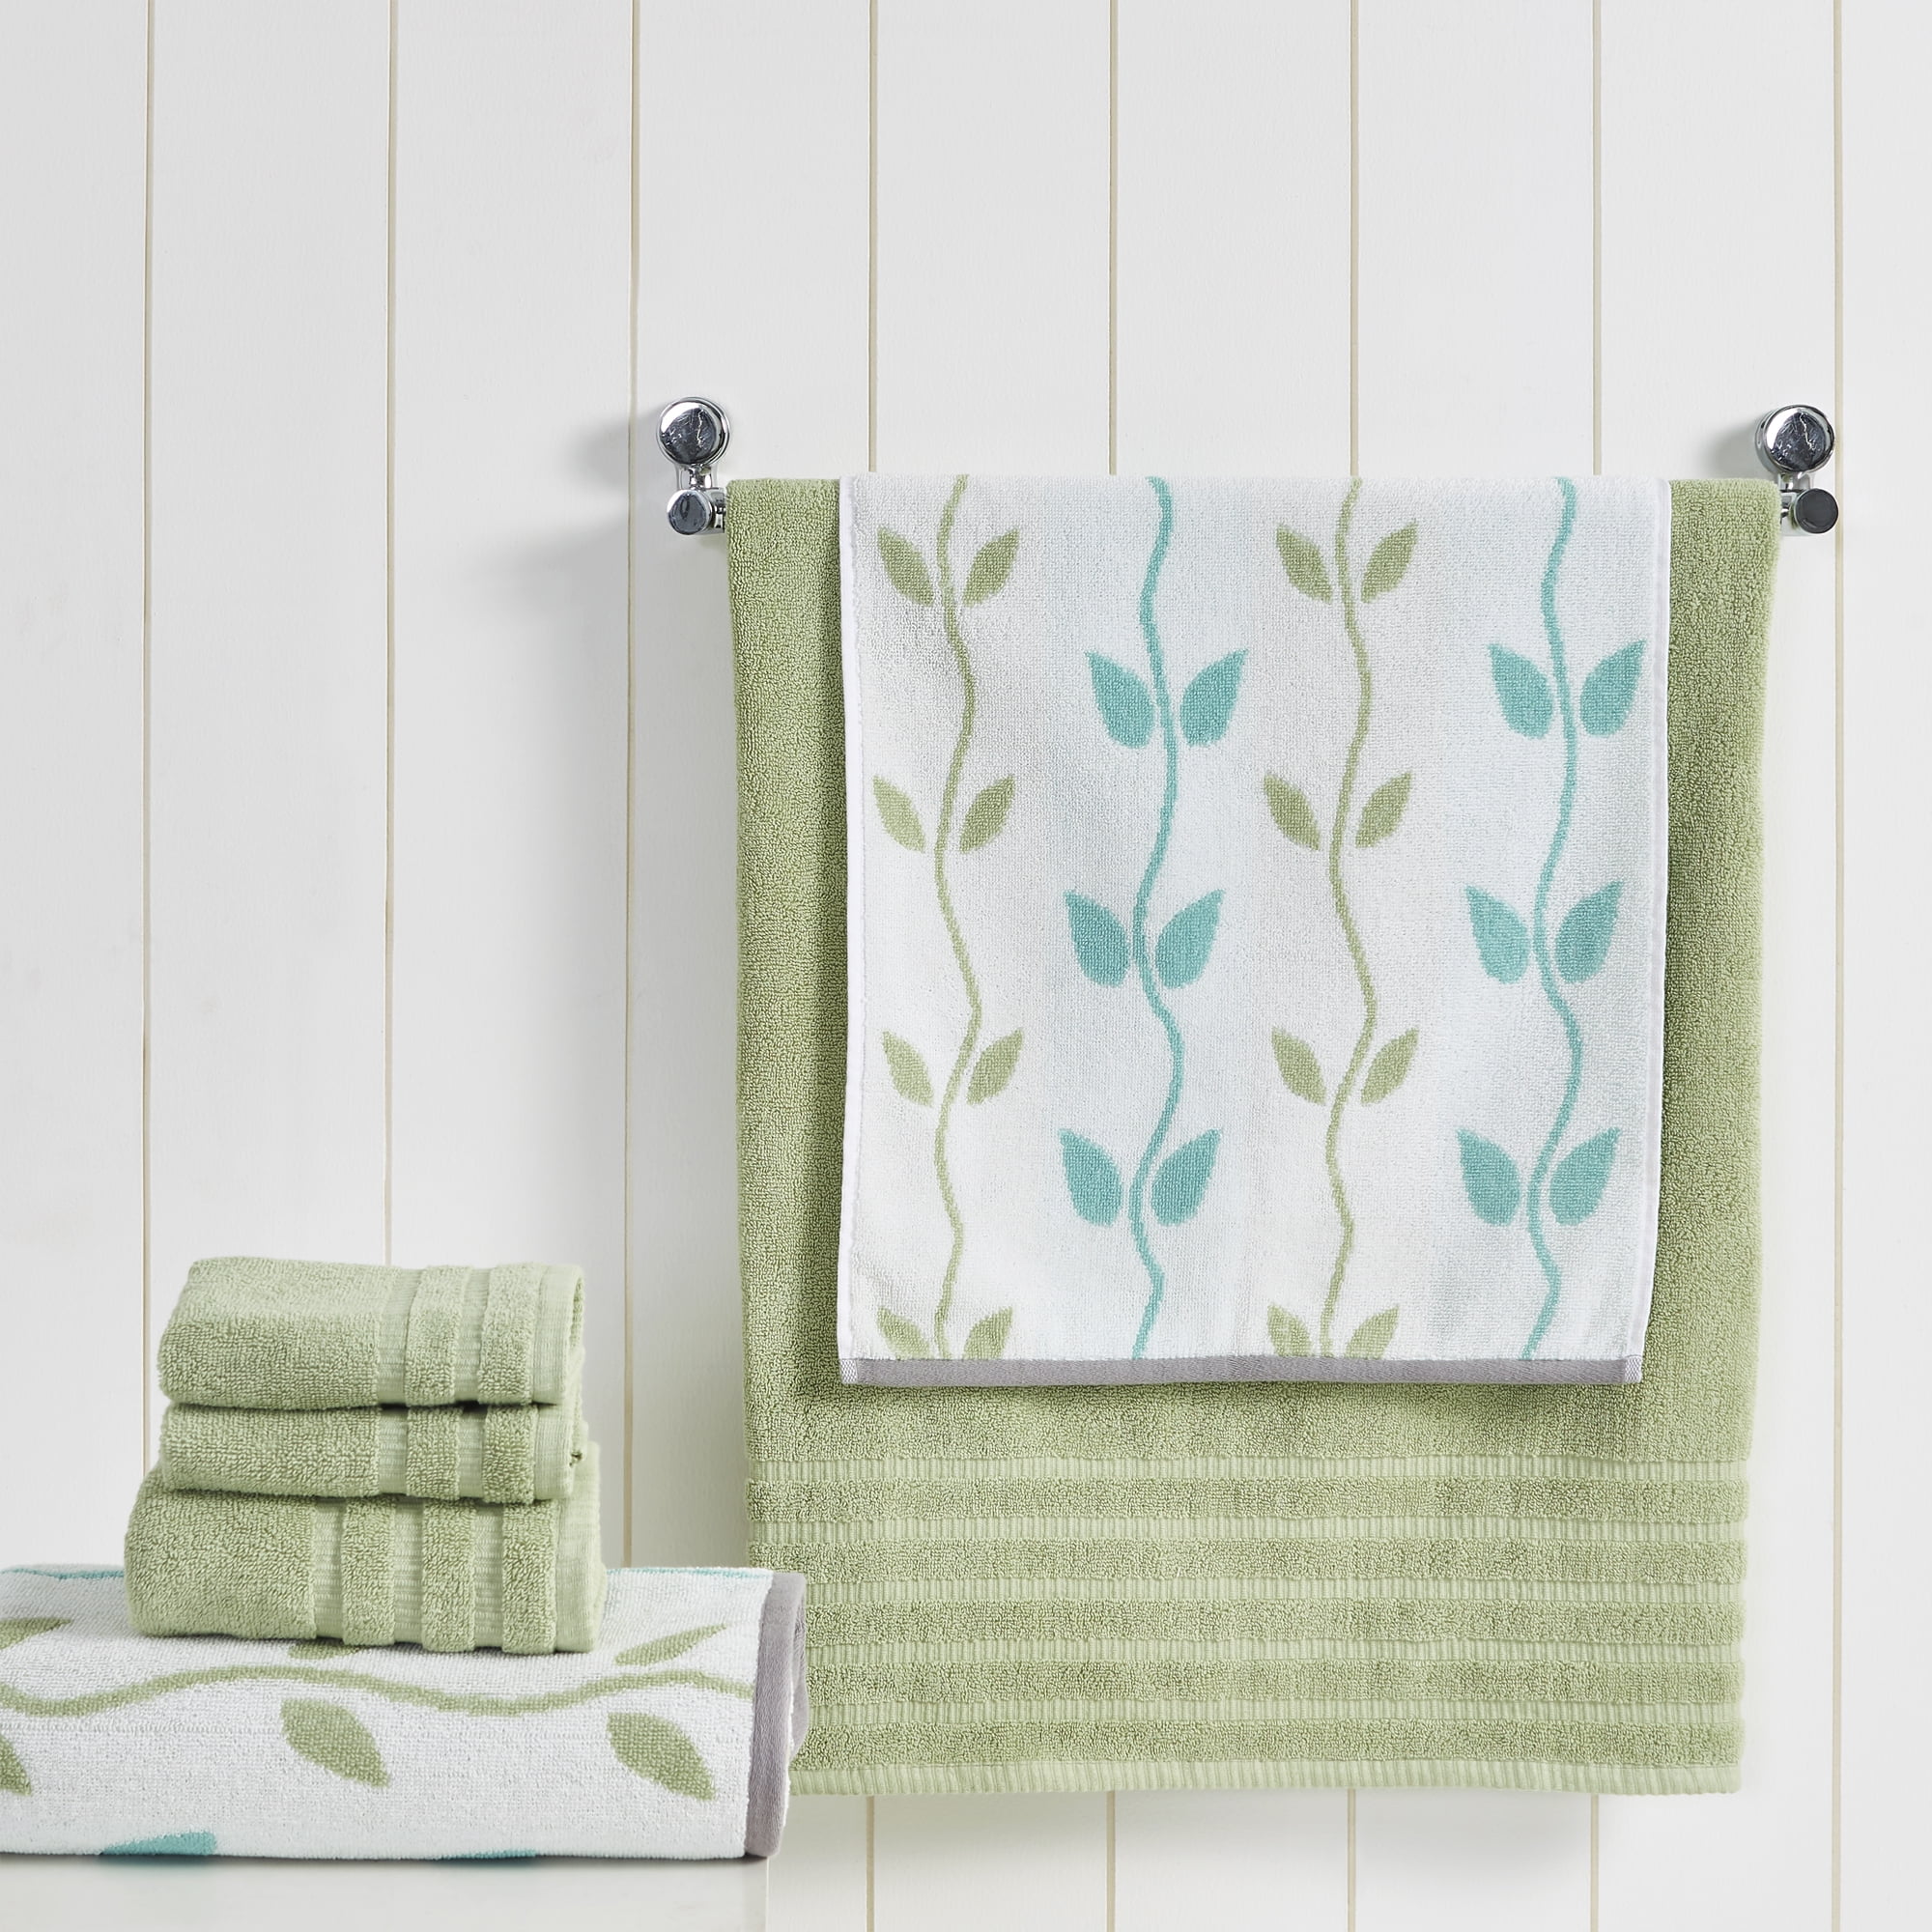 Cozy Organic Cotton Bath Towels – Magnolia Organics